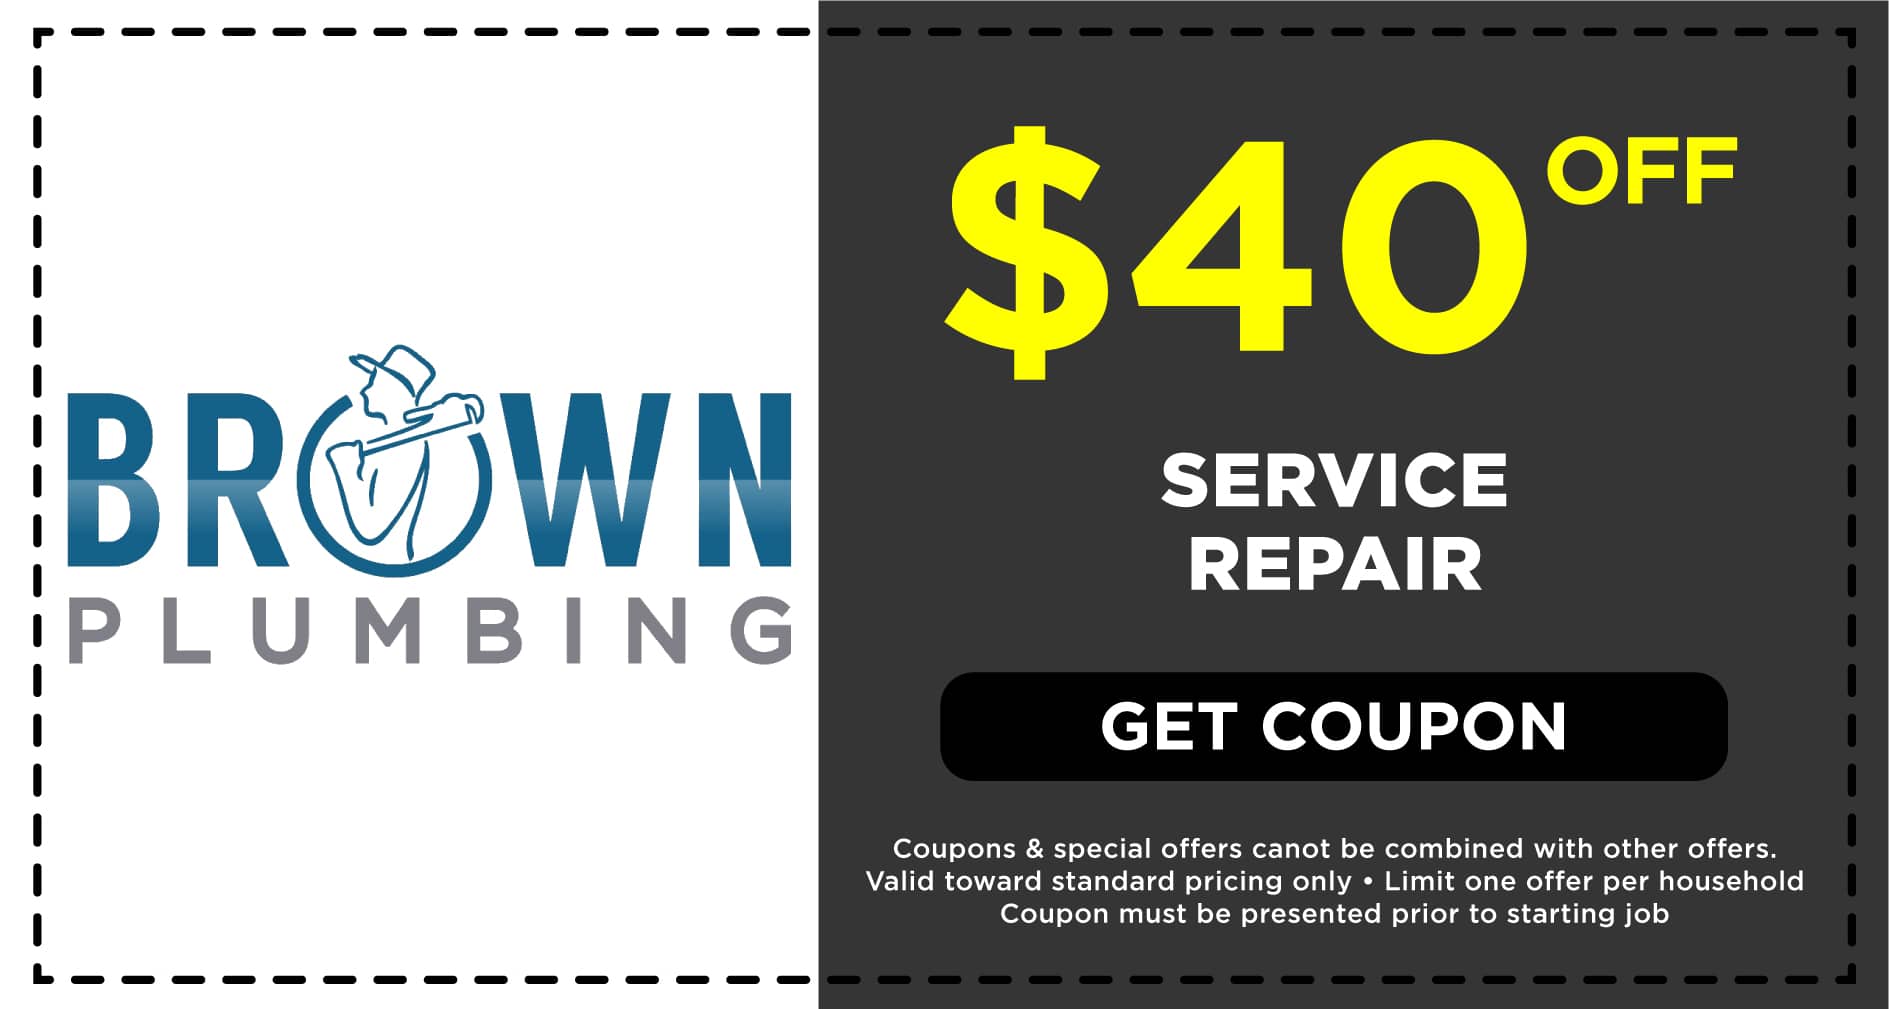 Brown Plumbing Service Repair Coupon